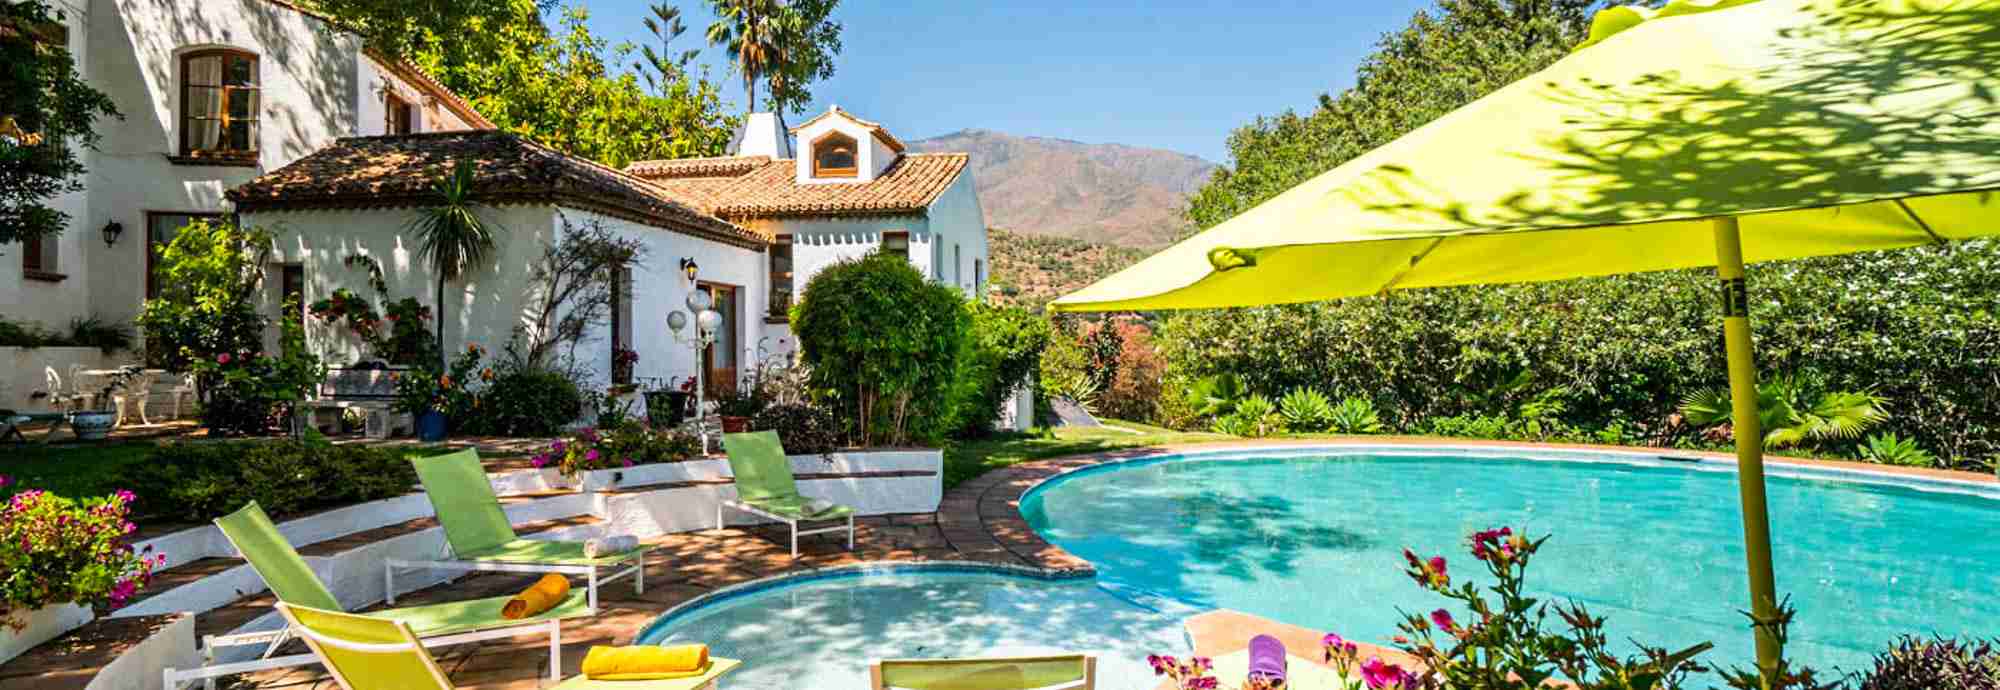 Villa con jardín y piscina encantadora en bonito valle cerca de la costa